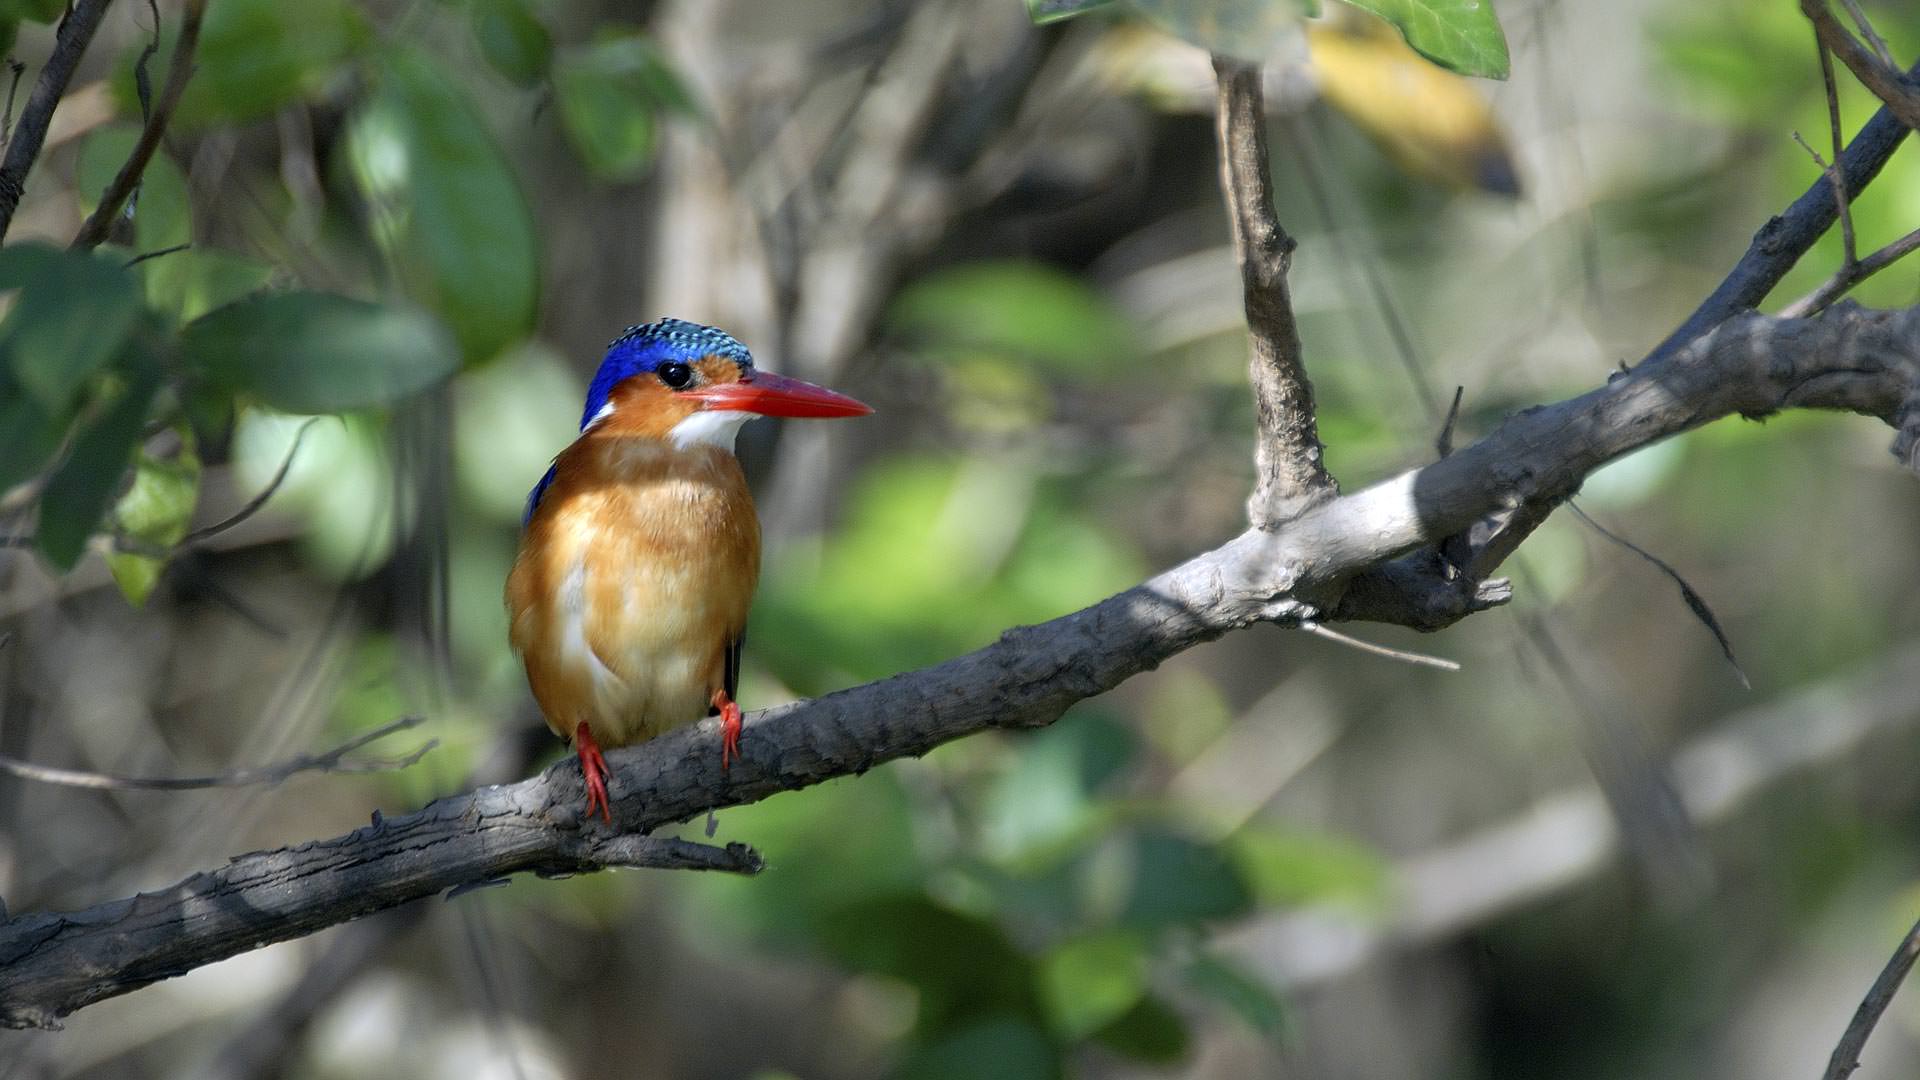 Roho ya Selous - Kingfisher relaxing